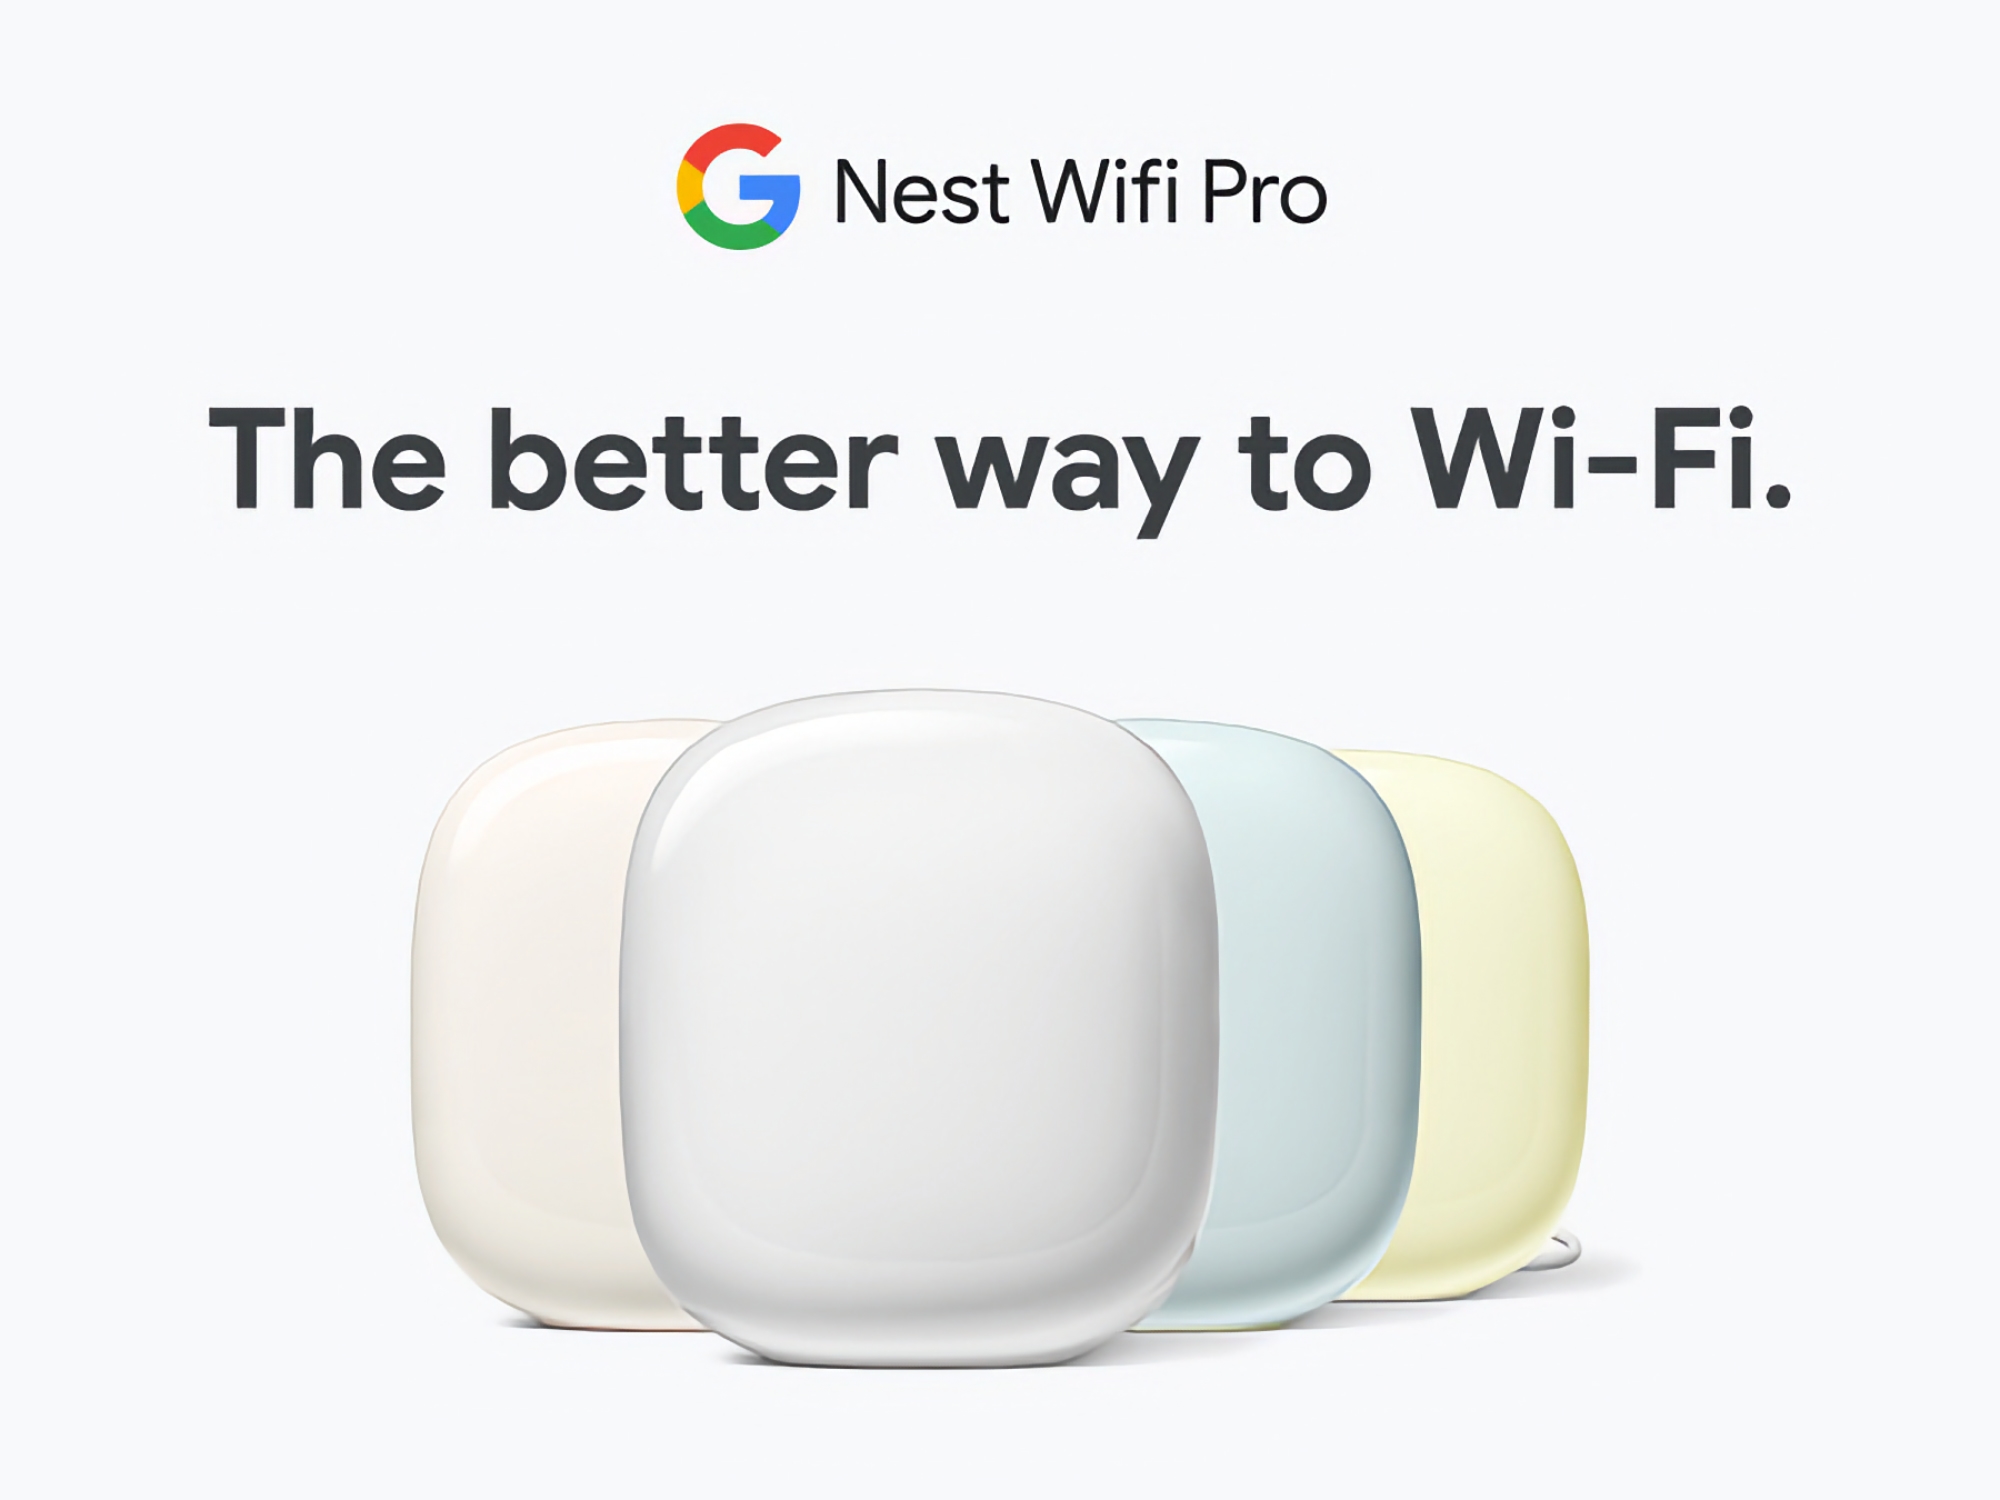 Google Nest WiFi Pro con soporte para tres bandas y Wi-Fi 6E está disponible en Amazon con un descuento de hasta 60€.